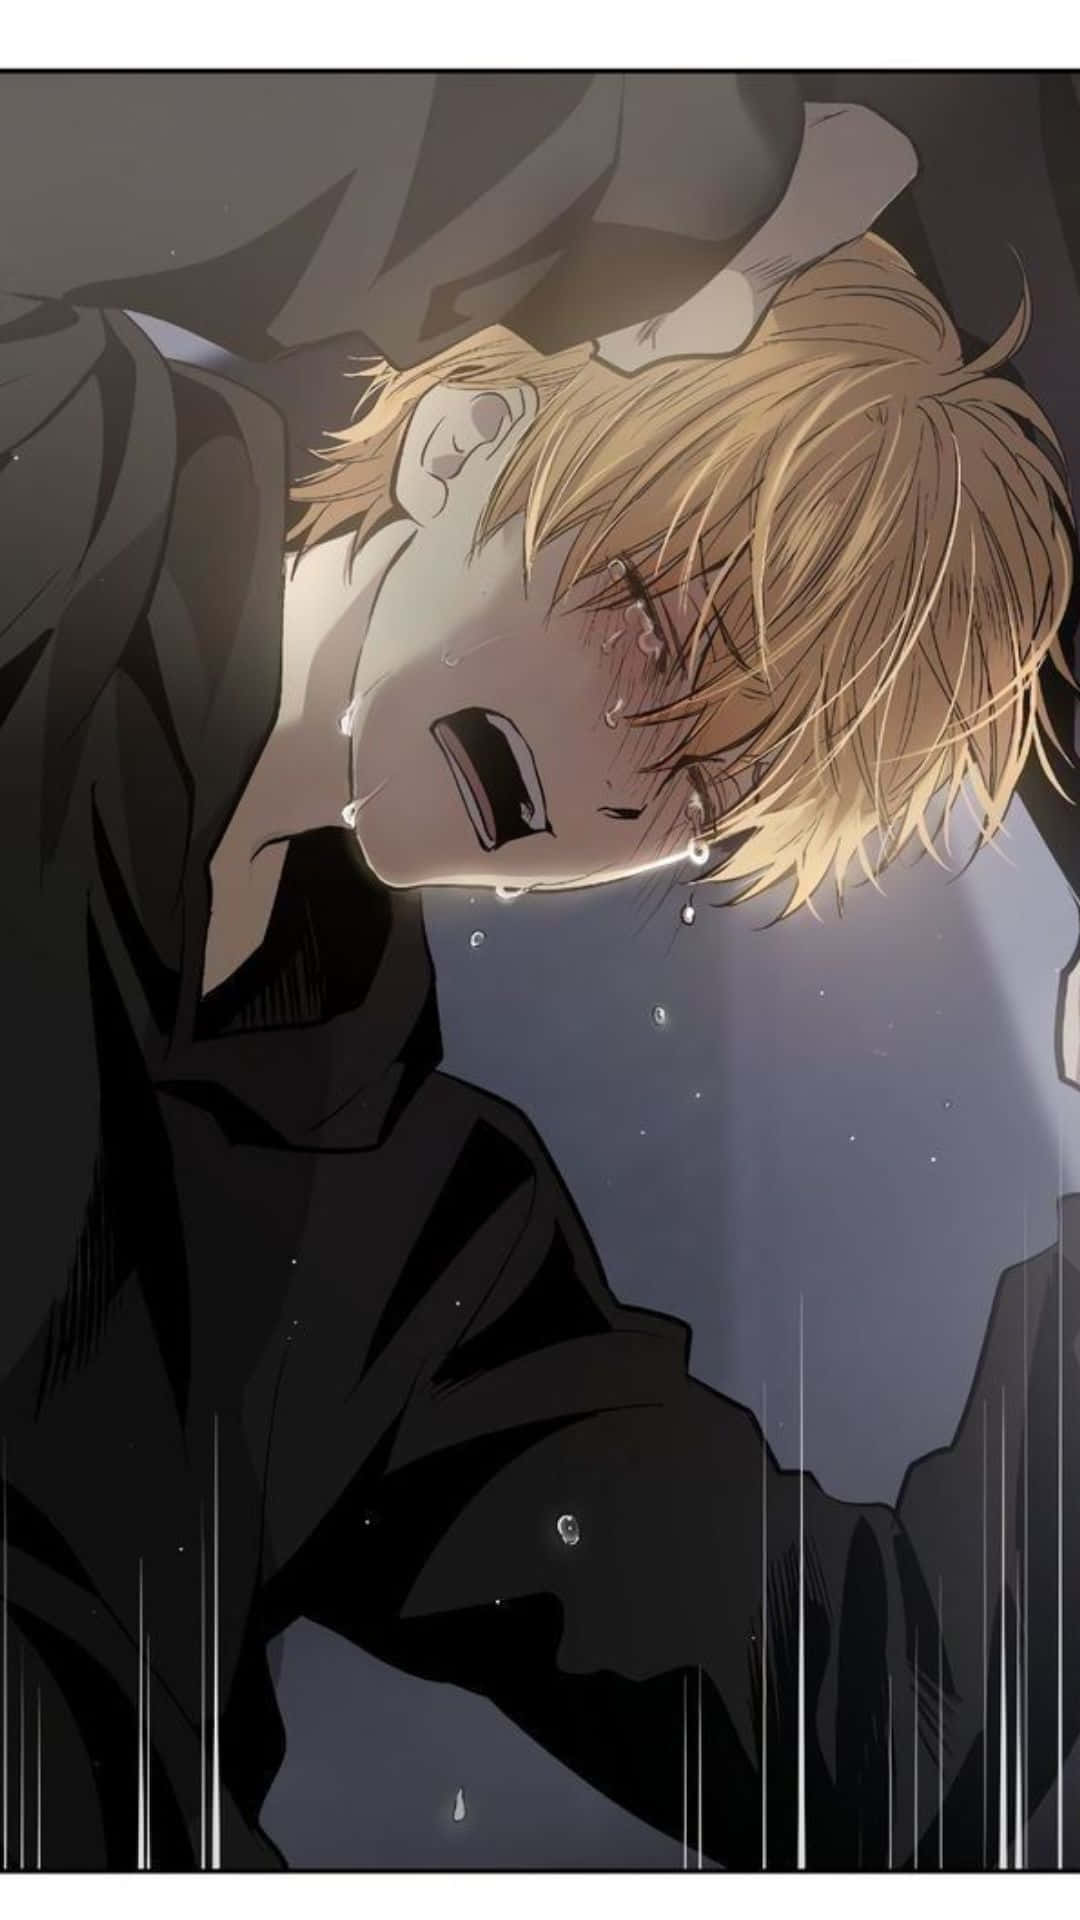 100+] Sad Crying Anime Wallpapers